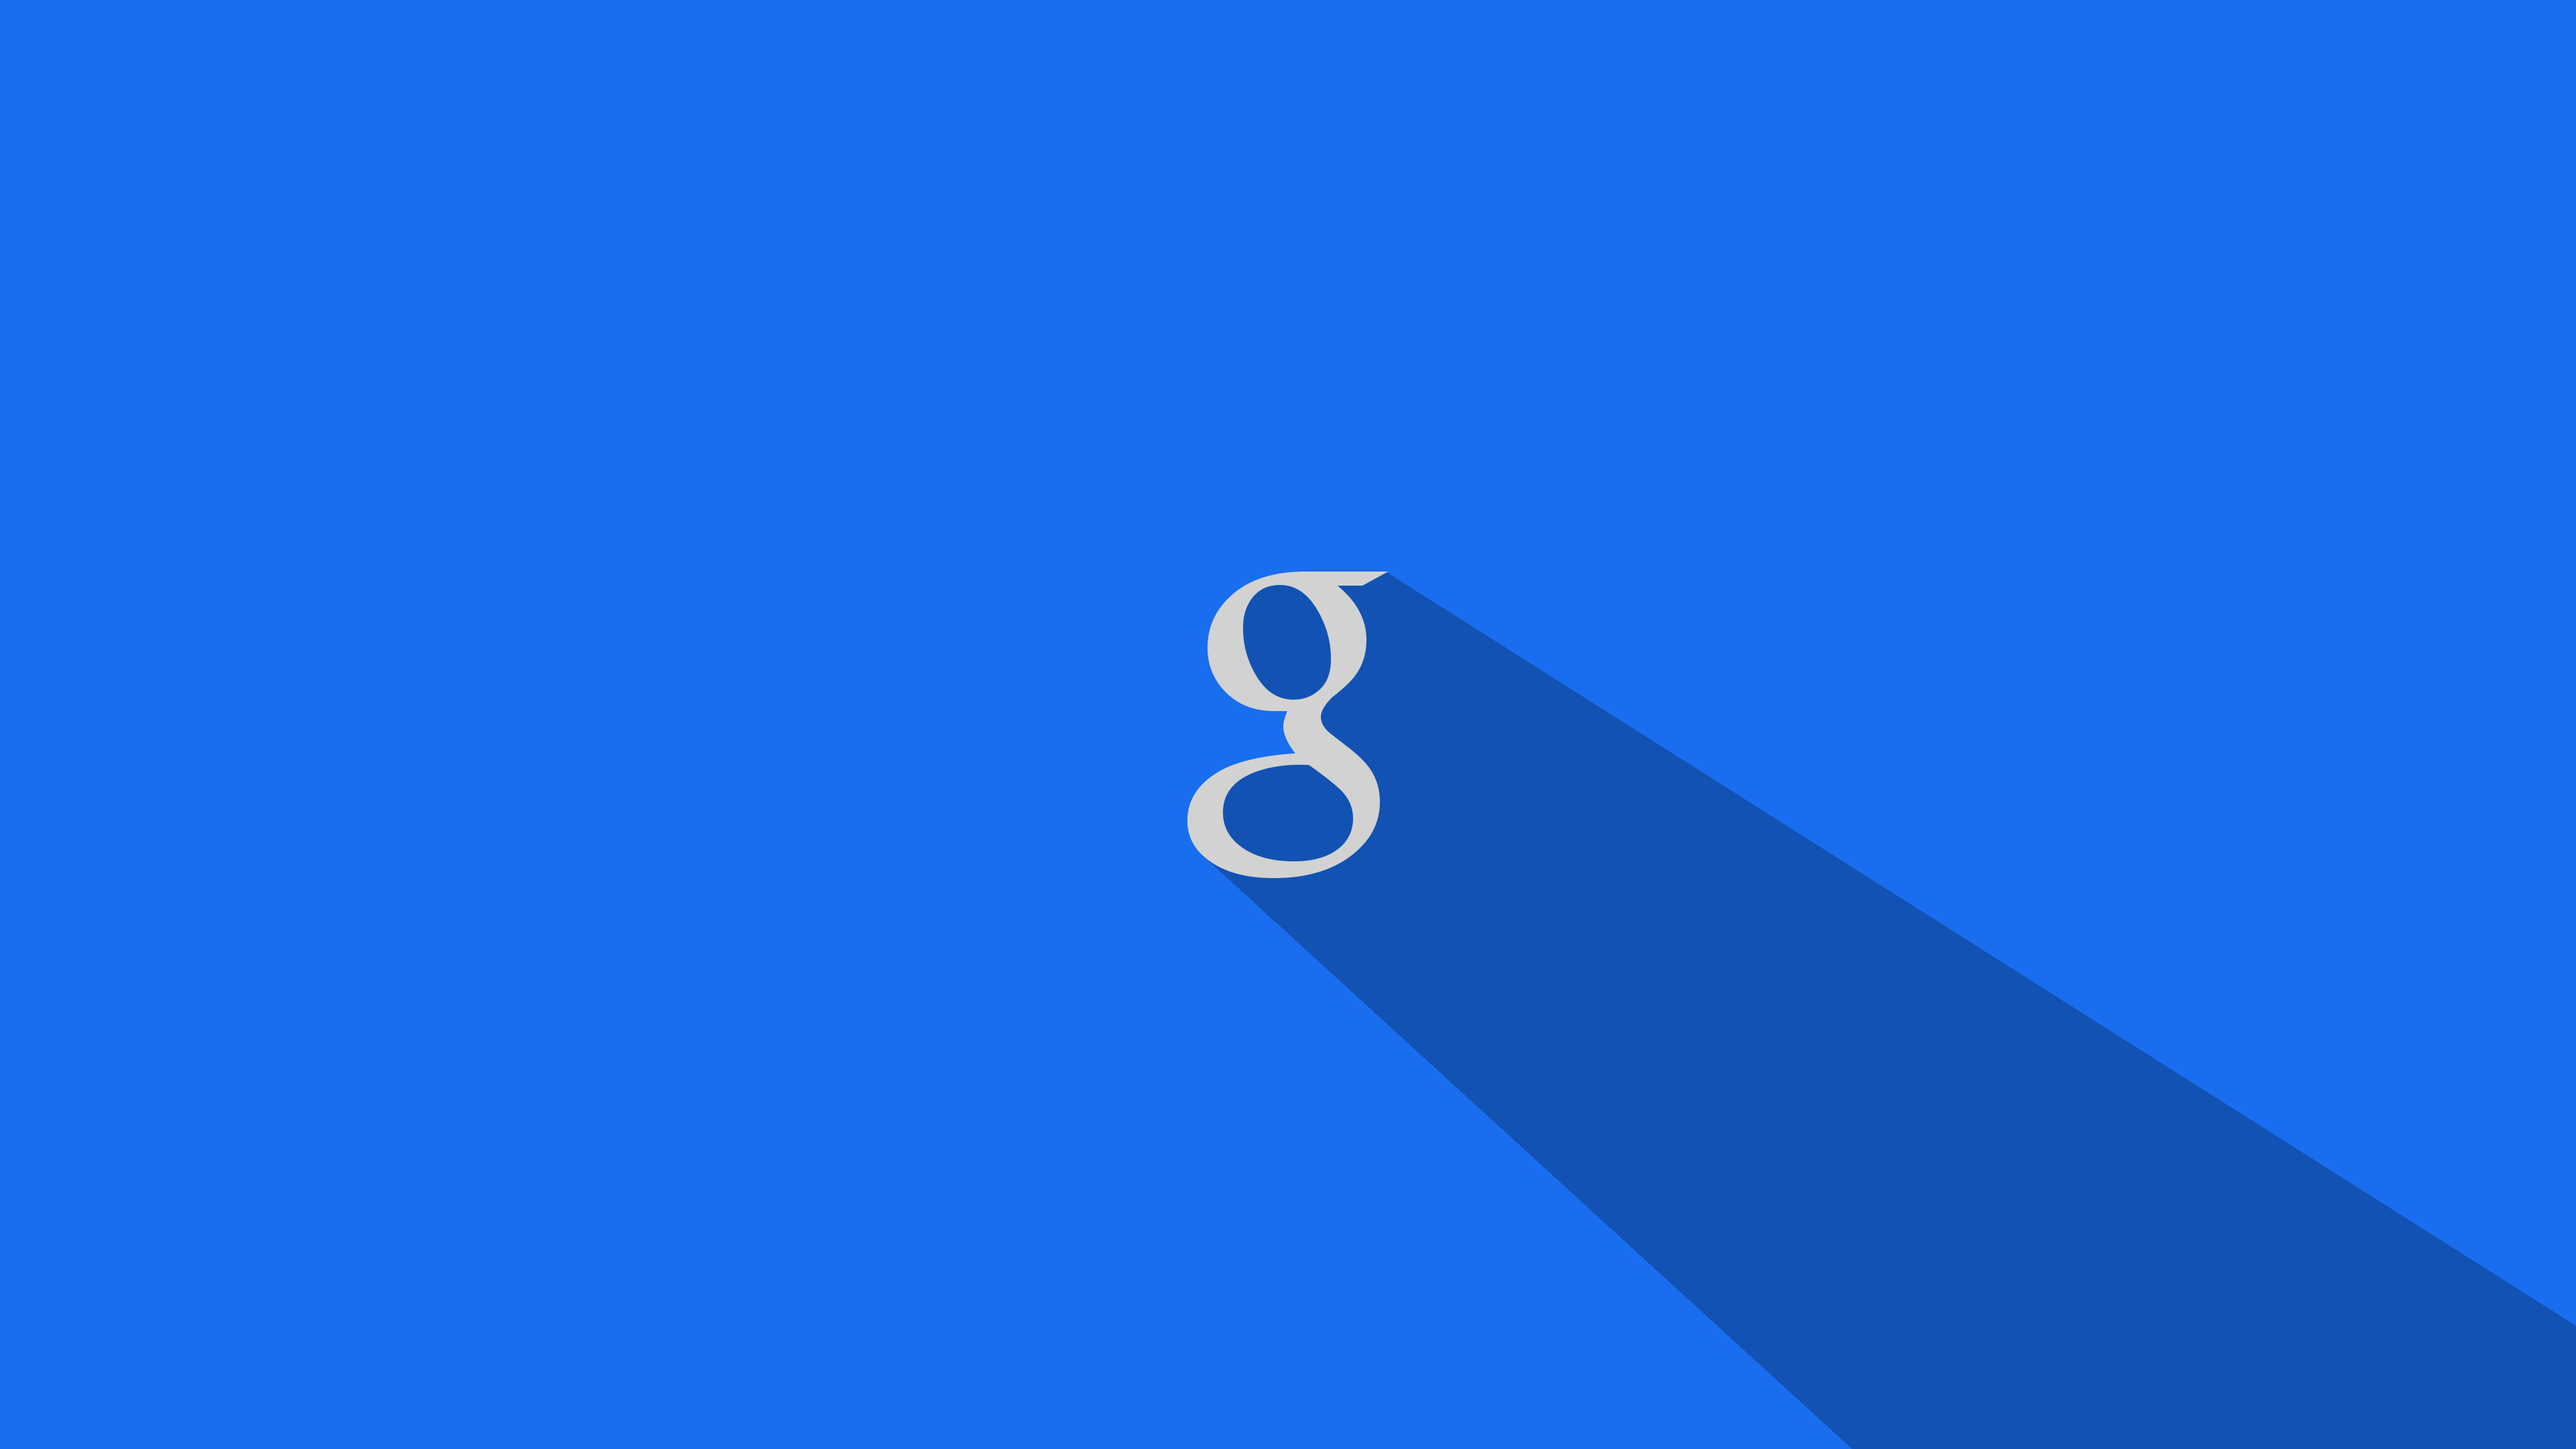 61 Google Wallpaper Desktop On Wallpapersafari